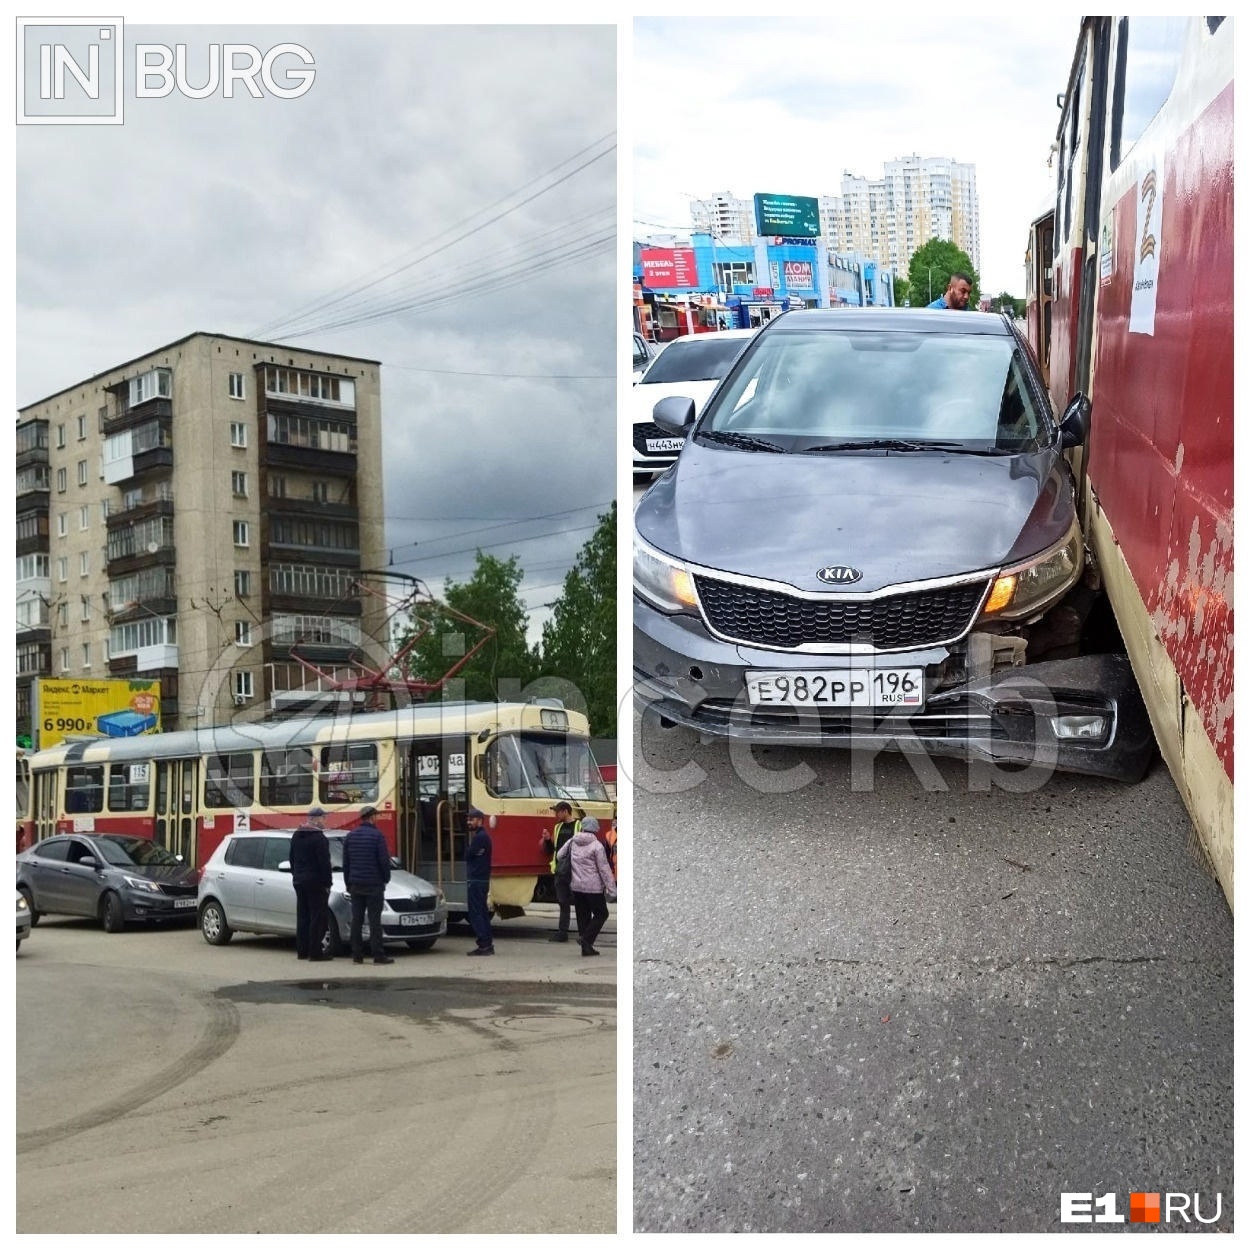 «Пока не уничтожит все трамваи — не успокоится». В Екатеринбурге черная Kia опять бьет общественный транспорт